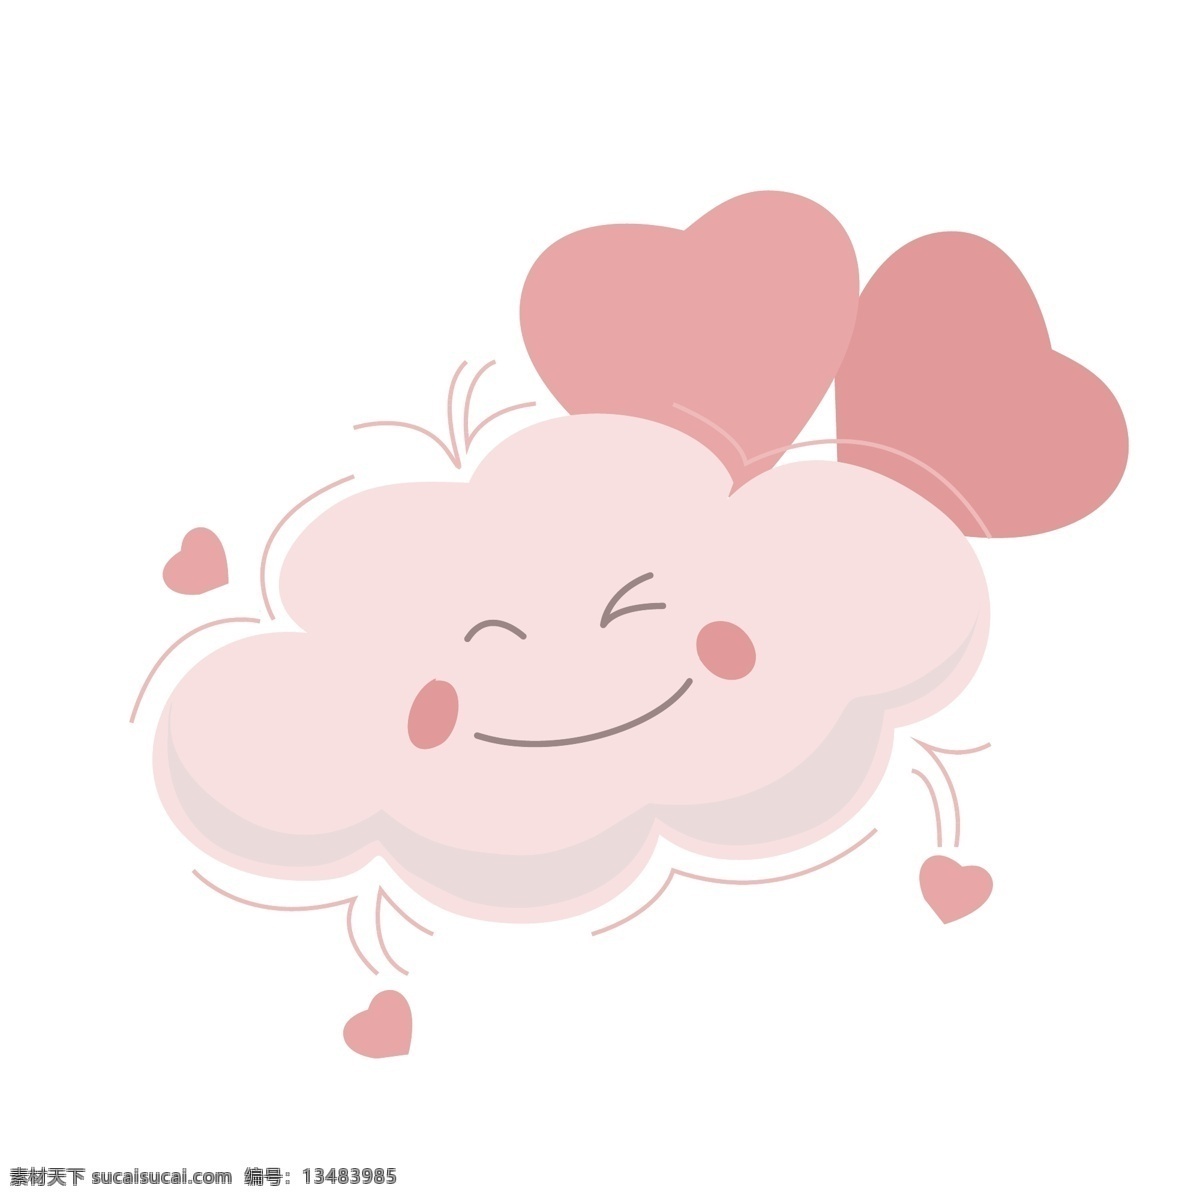 可爱 卡通 云 商用 矢量 元素 可爱的云朵 卡通云朵 矢量云朵 手绘云朵 彩色的云朵 简笔云朵